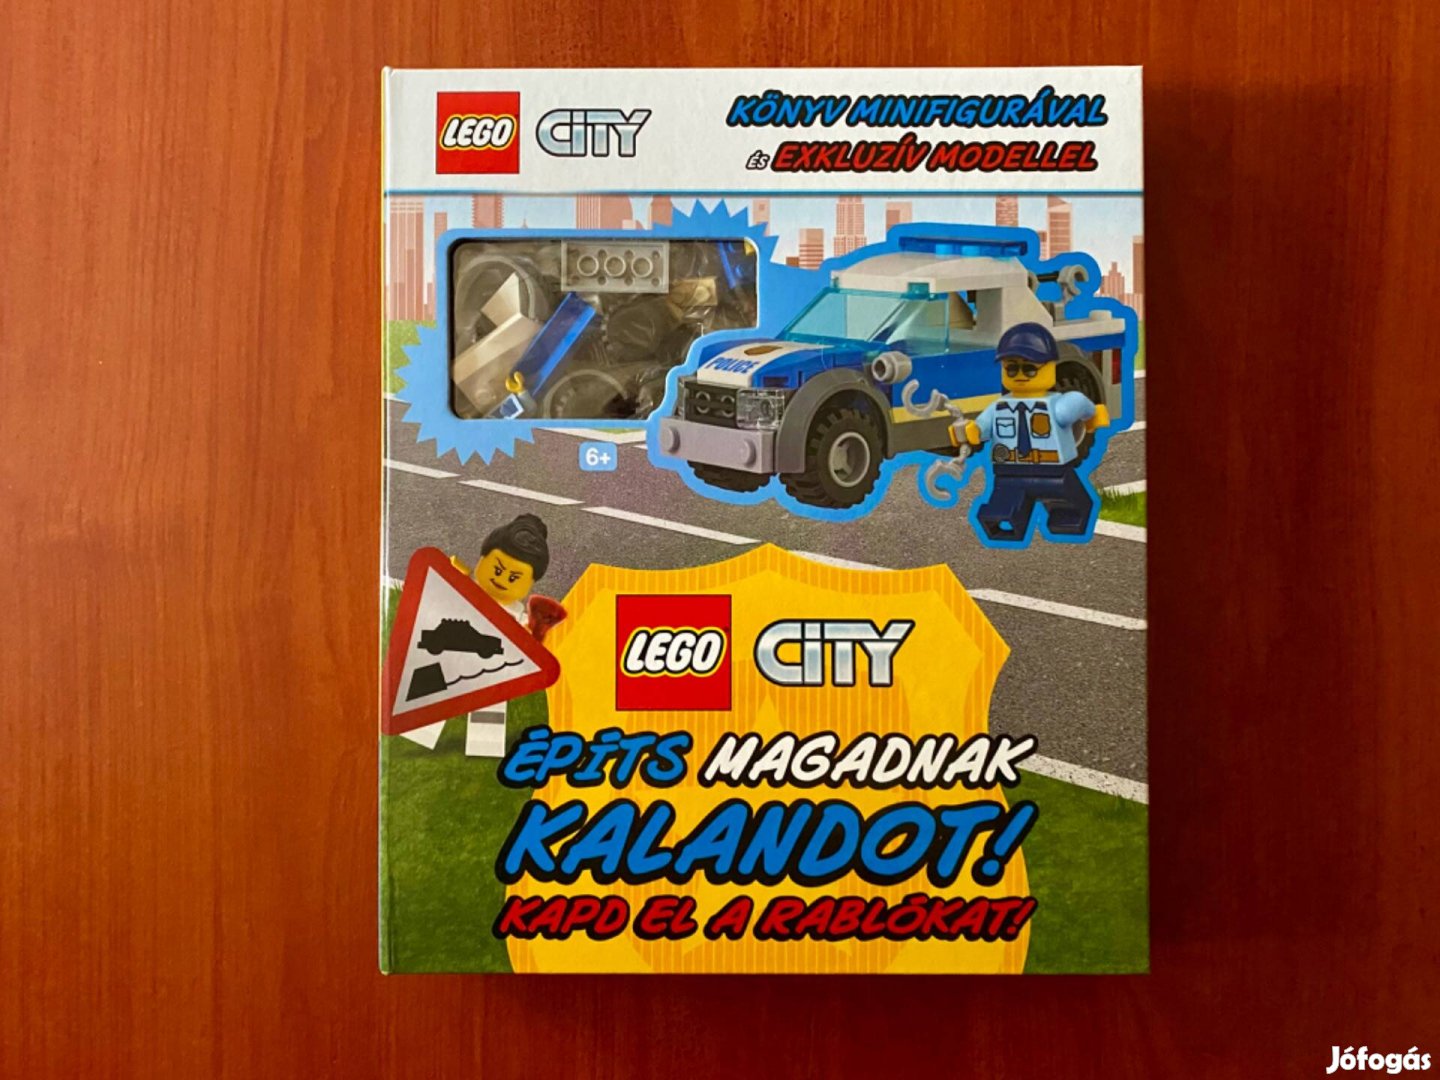 LEGO City - Építs magadnak kalandot! Kapd el a rablókat! (könyv+Lego)